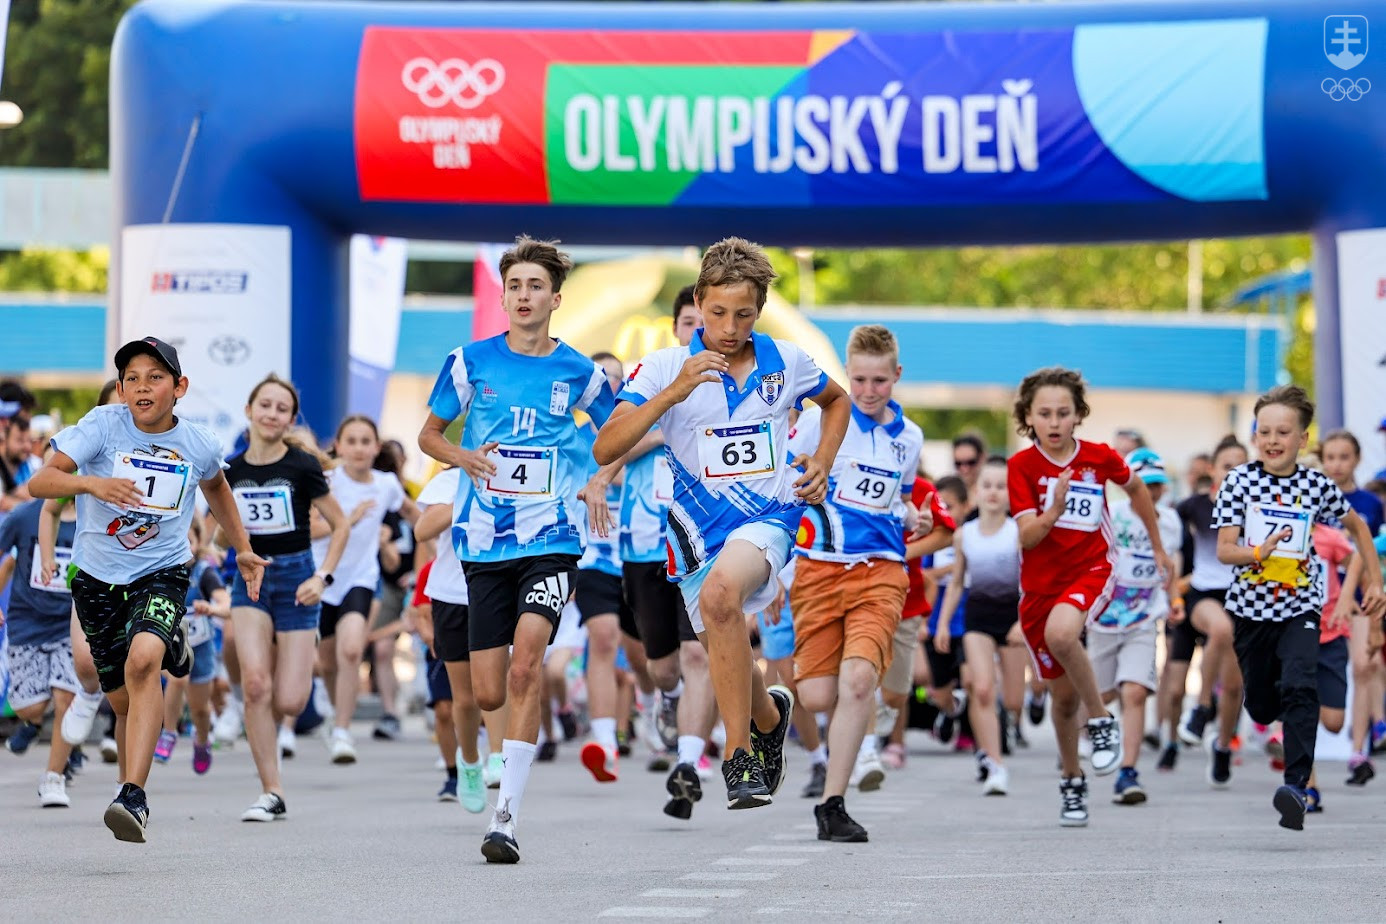 Súčasťou osláv Olympijského dňa sú aj populárne bežecké podujatia.  